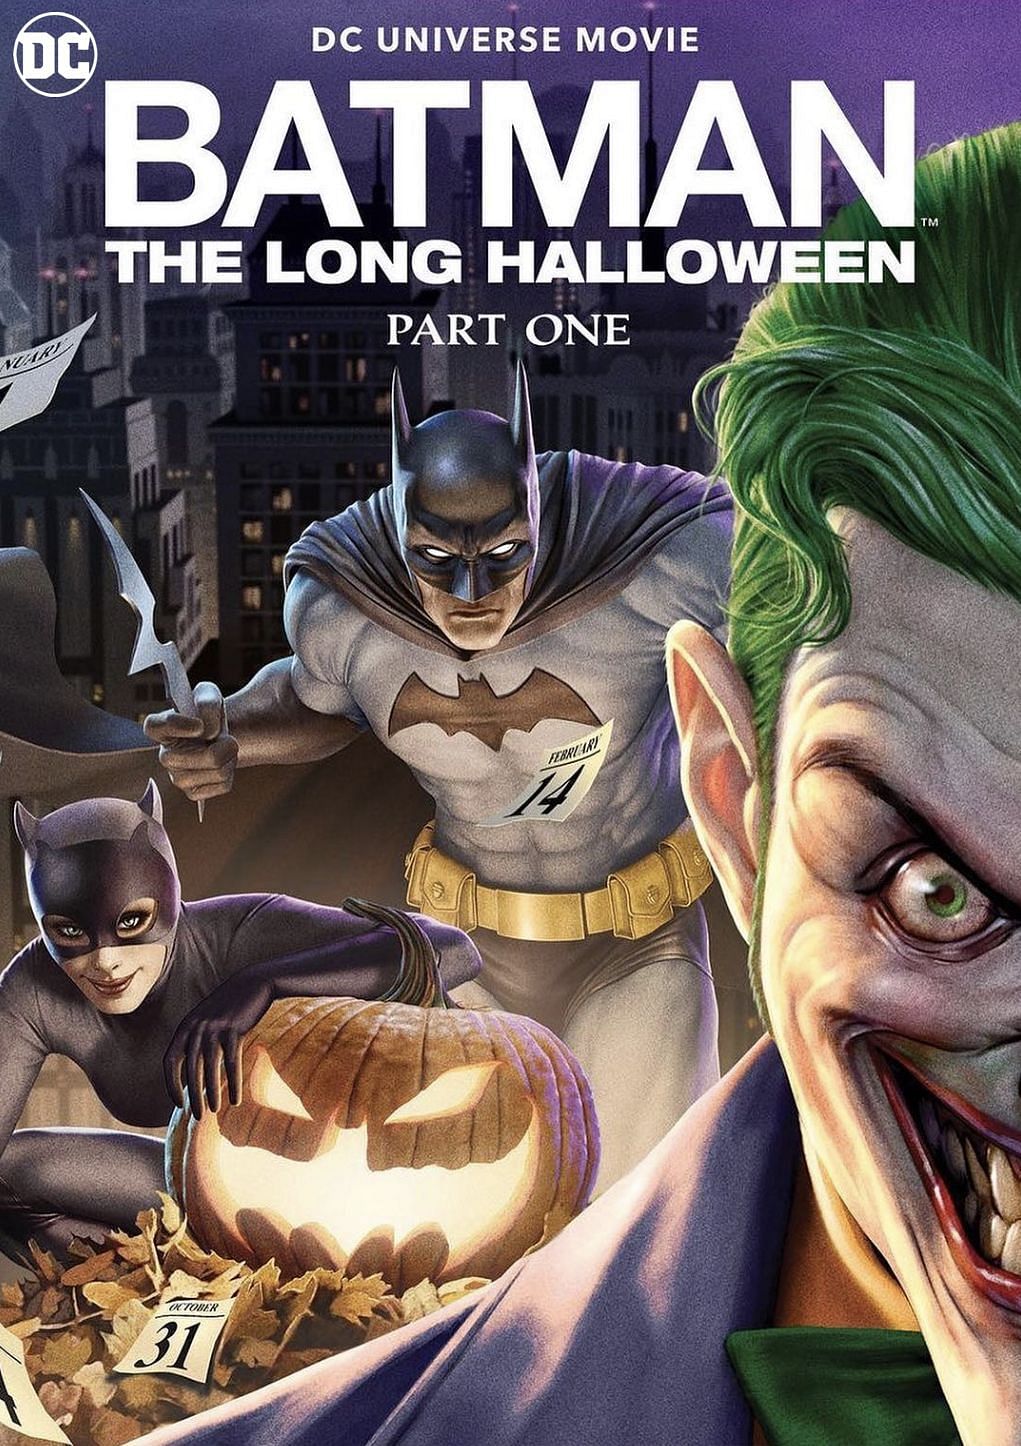 The Long Halloween (Image via IMDB.com)